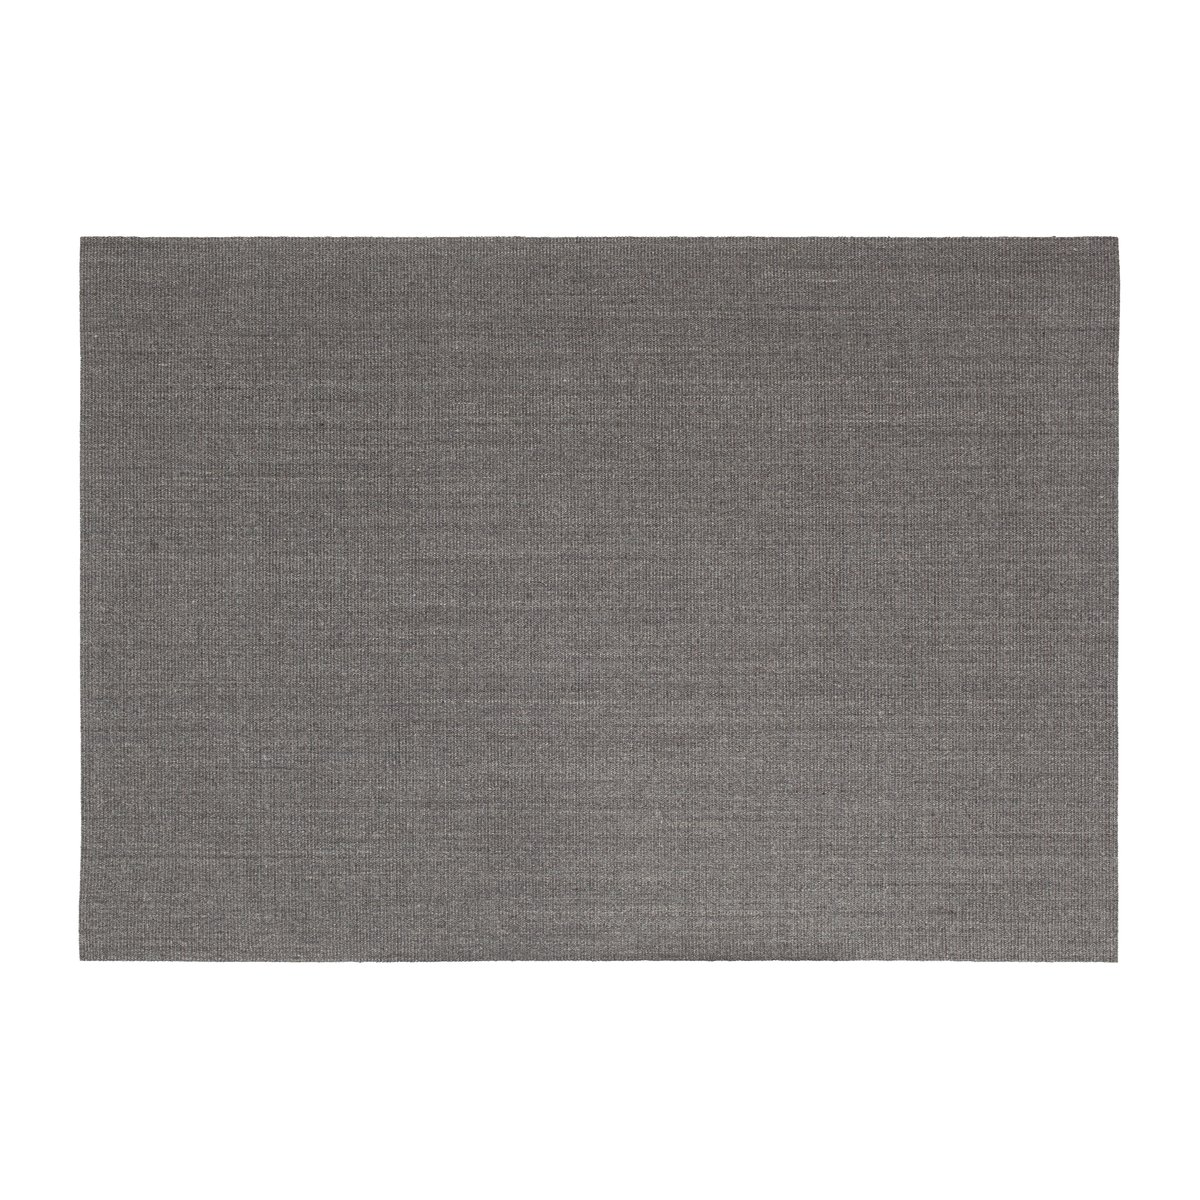 Bilde av Dixie Sisal teppe grå 160 x 230 cm